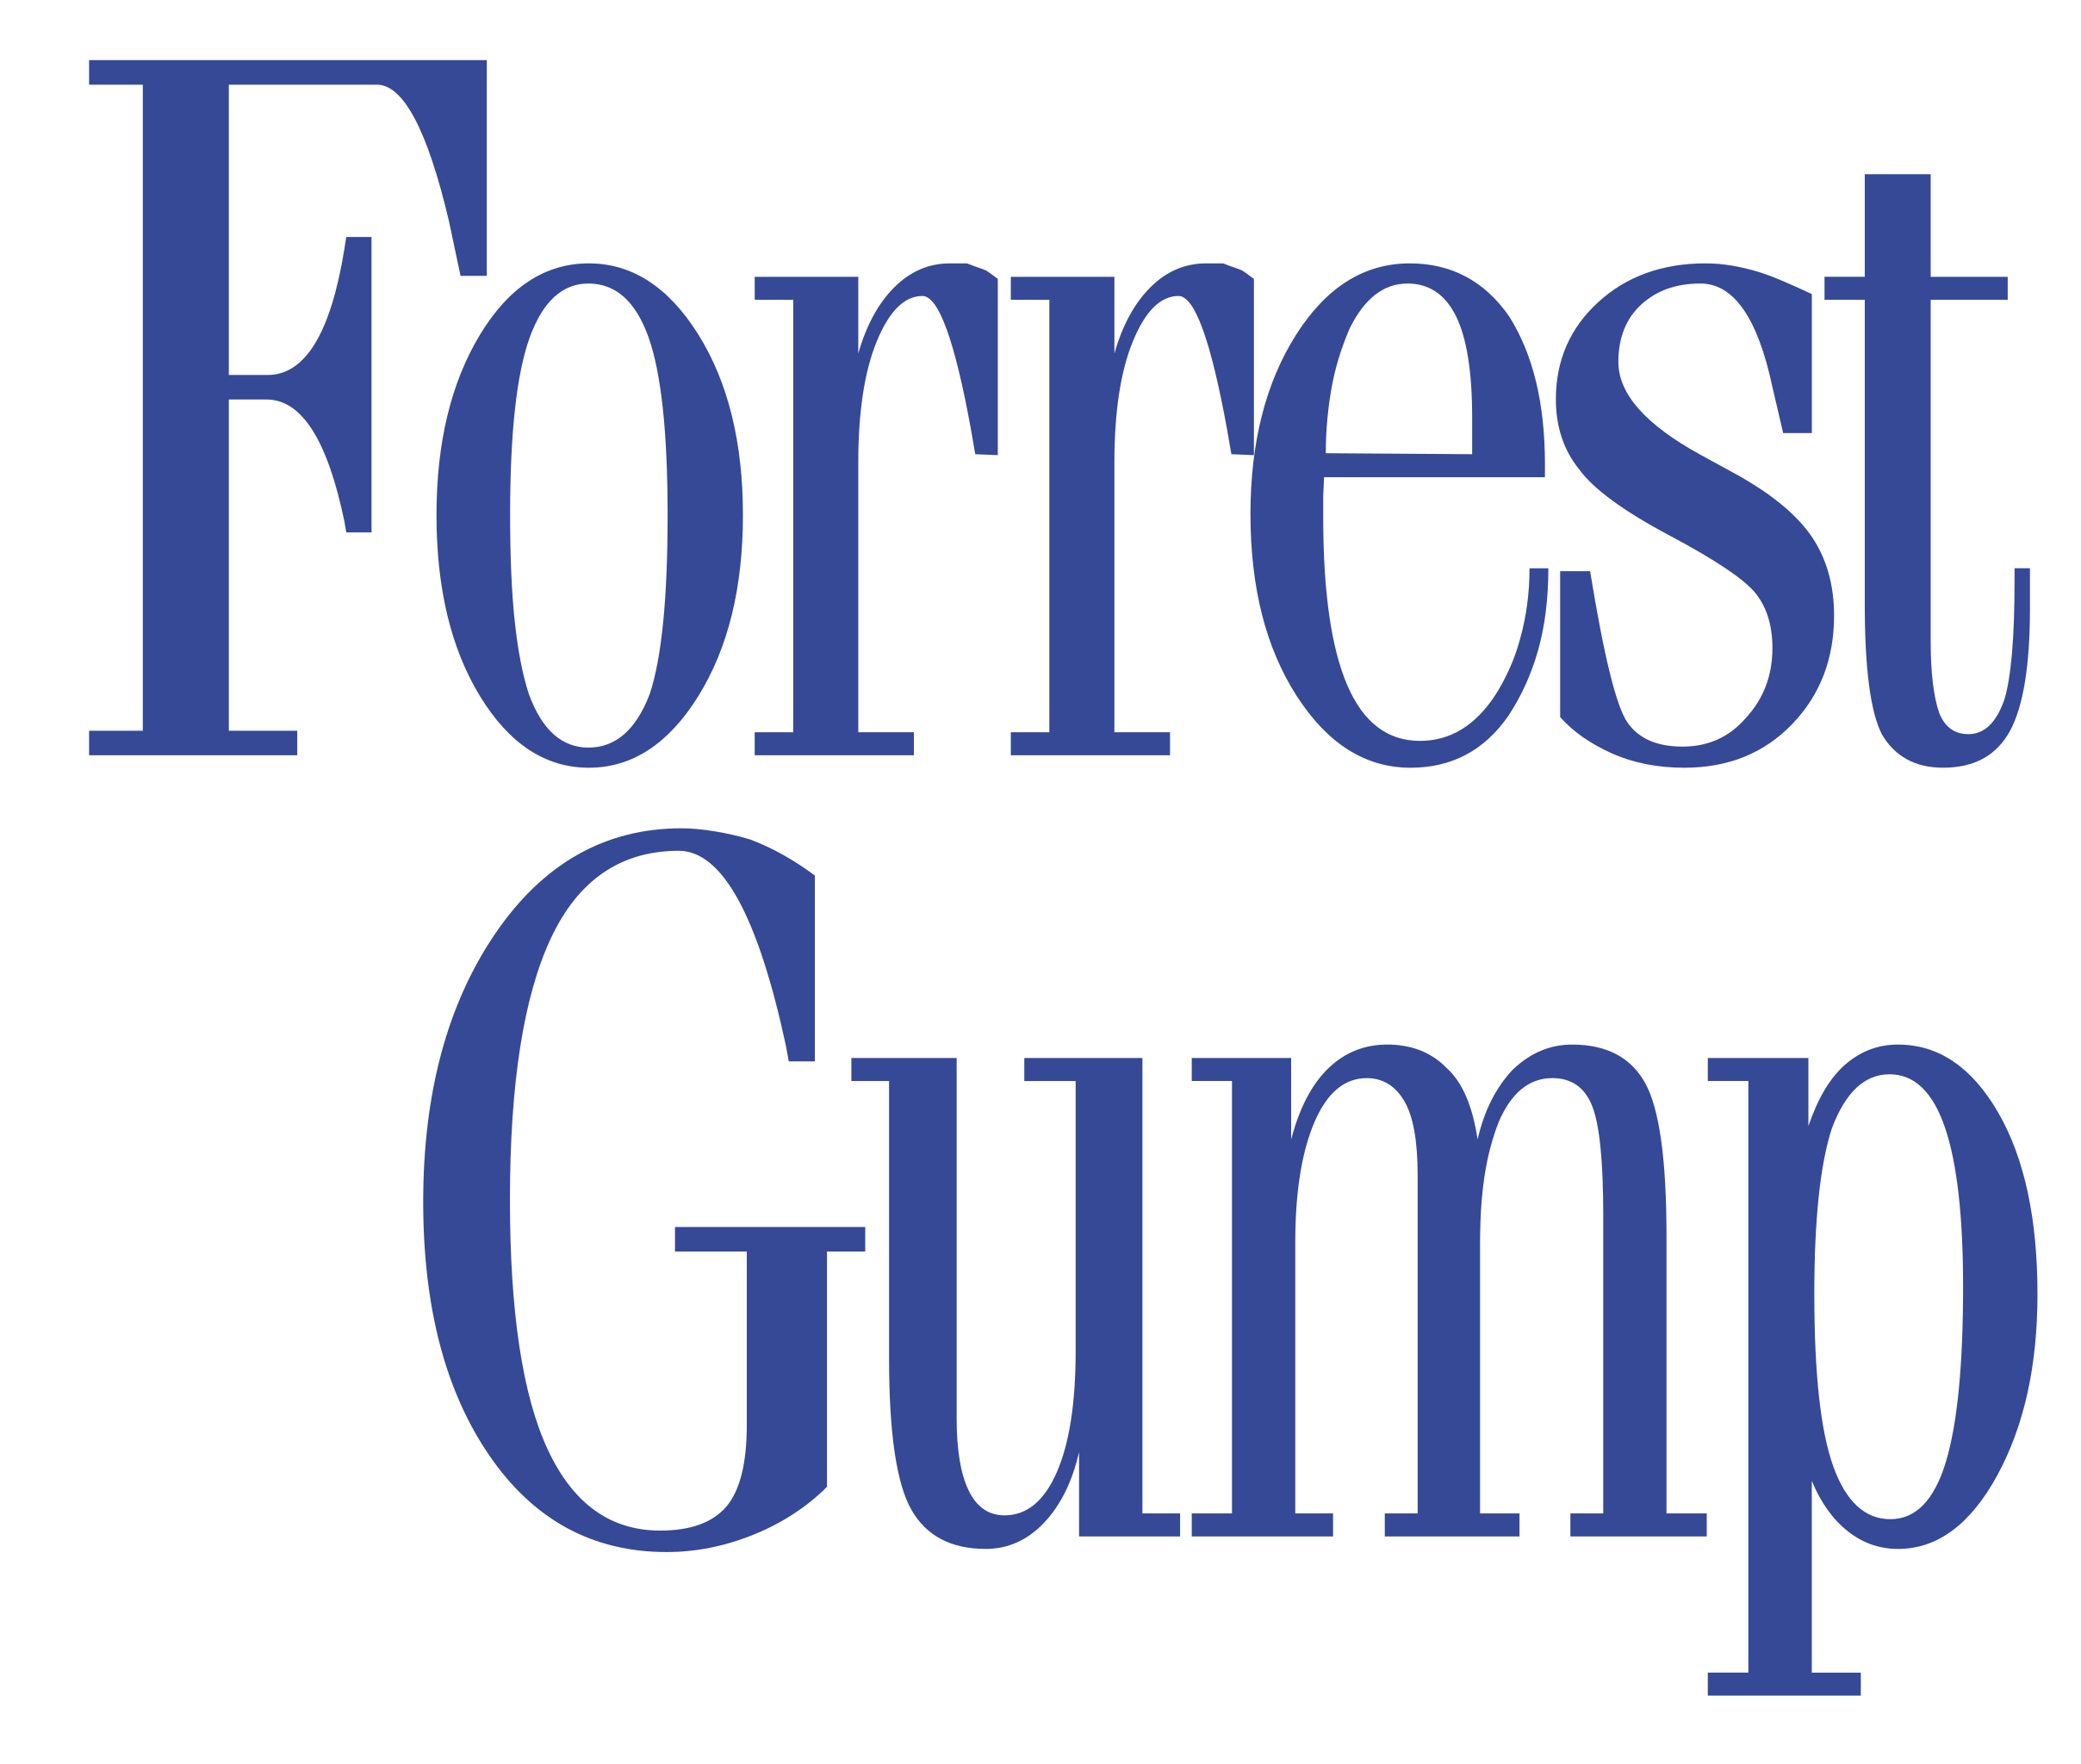 Forrest Gump Background PNG Image